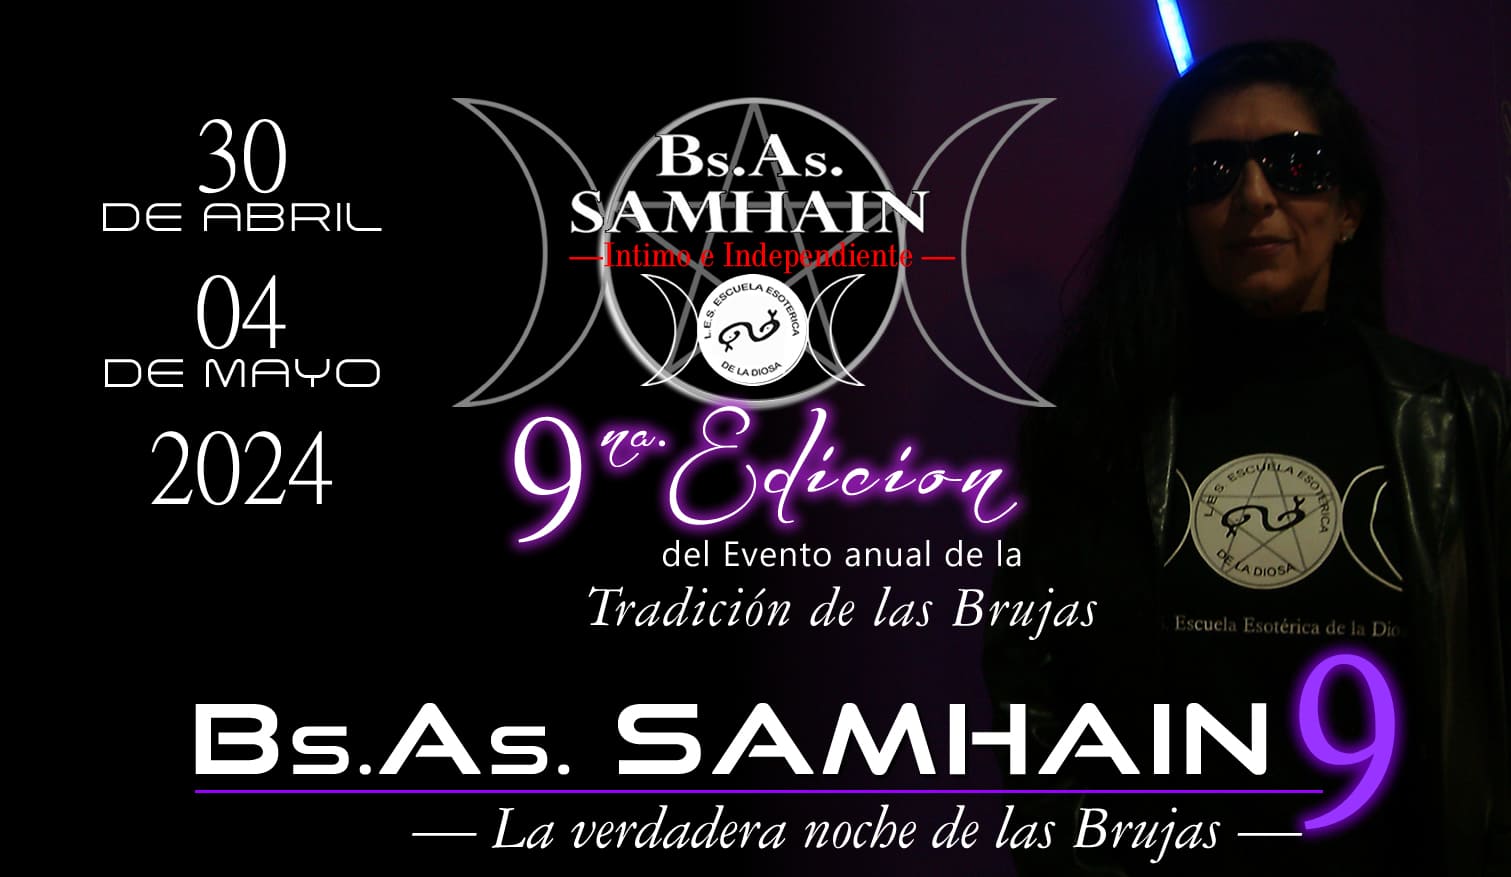 Invitación al evento BsAs Samhain 9 La Tradición de las Brujas